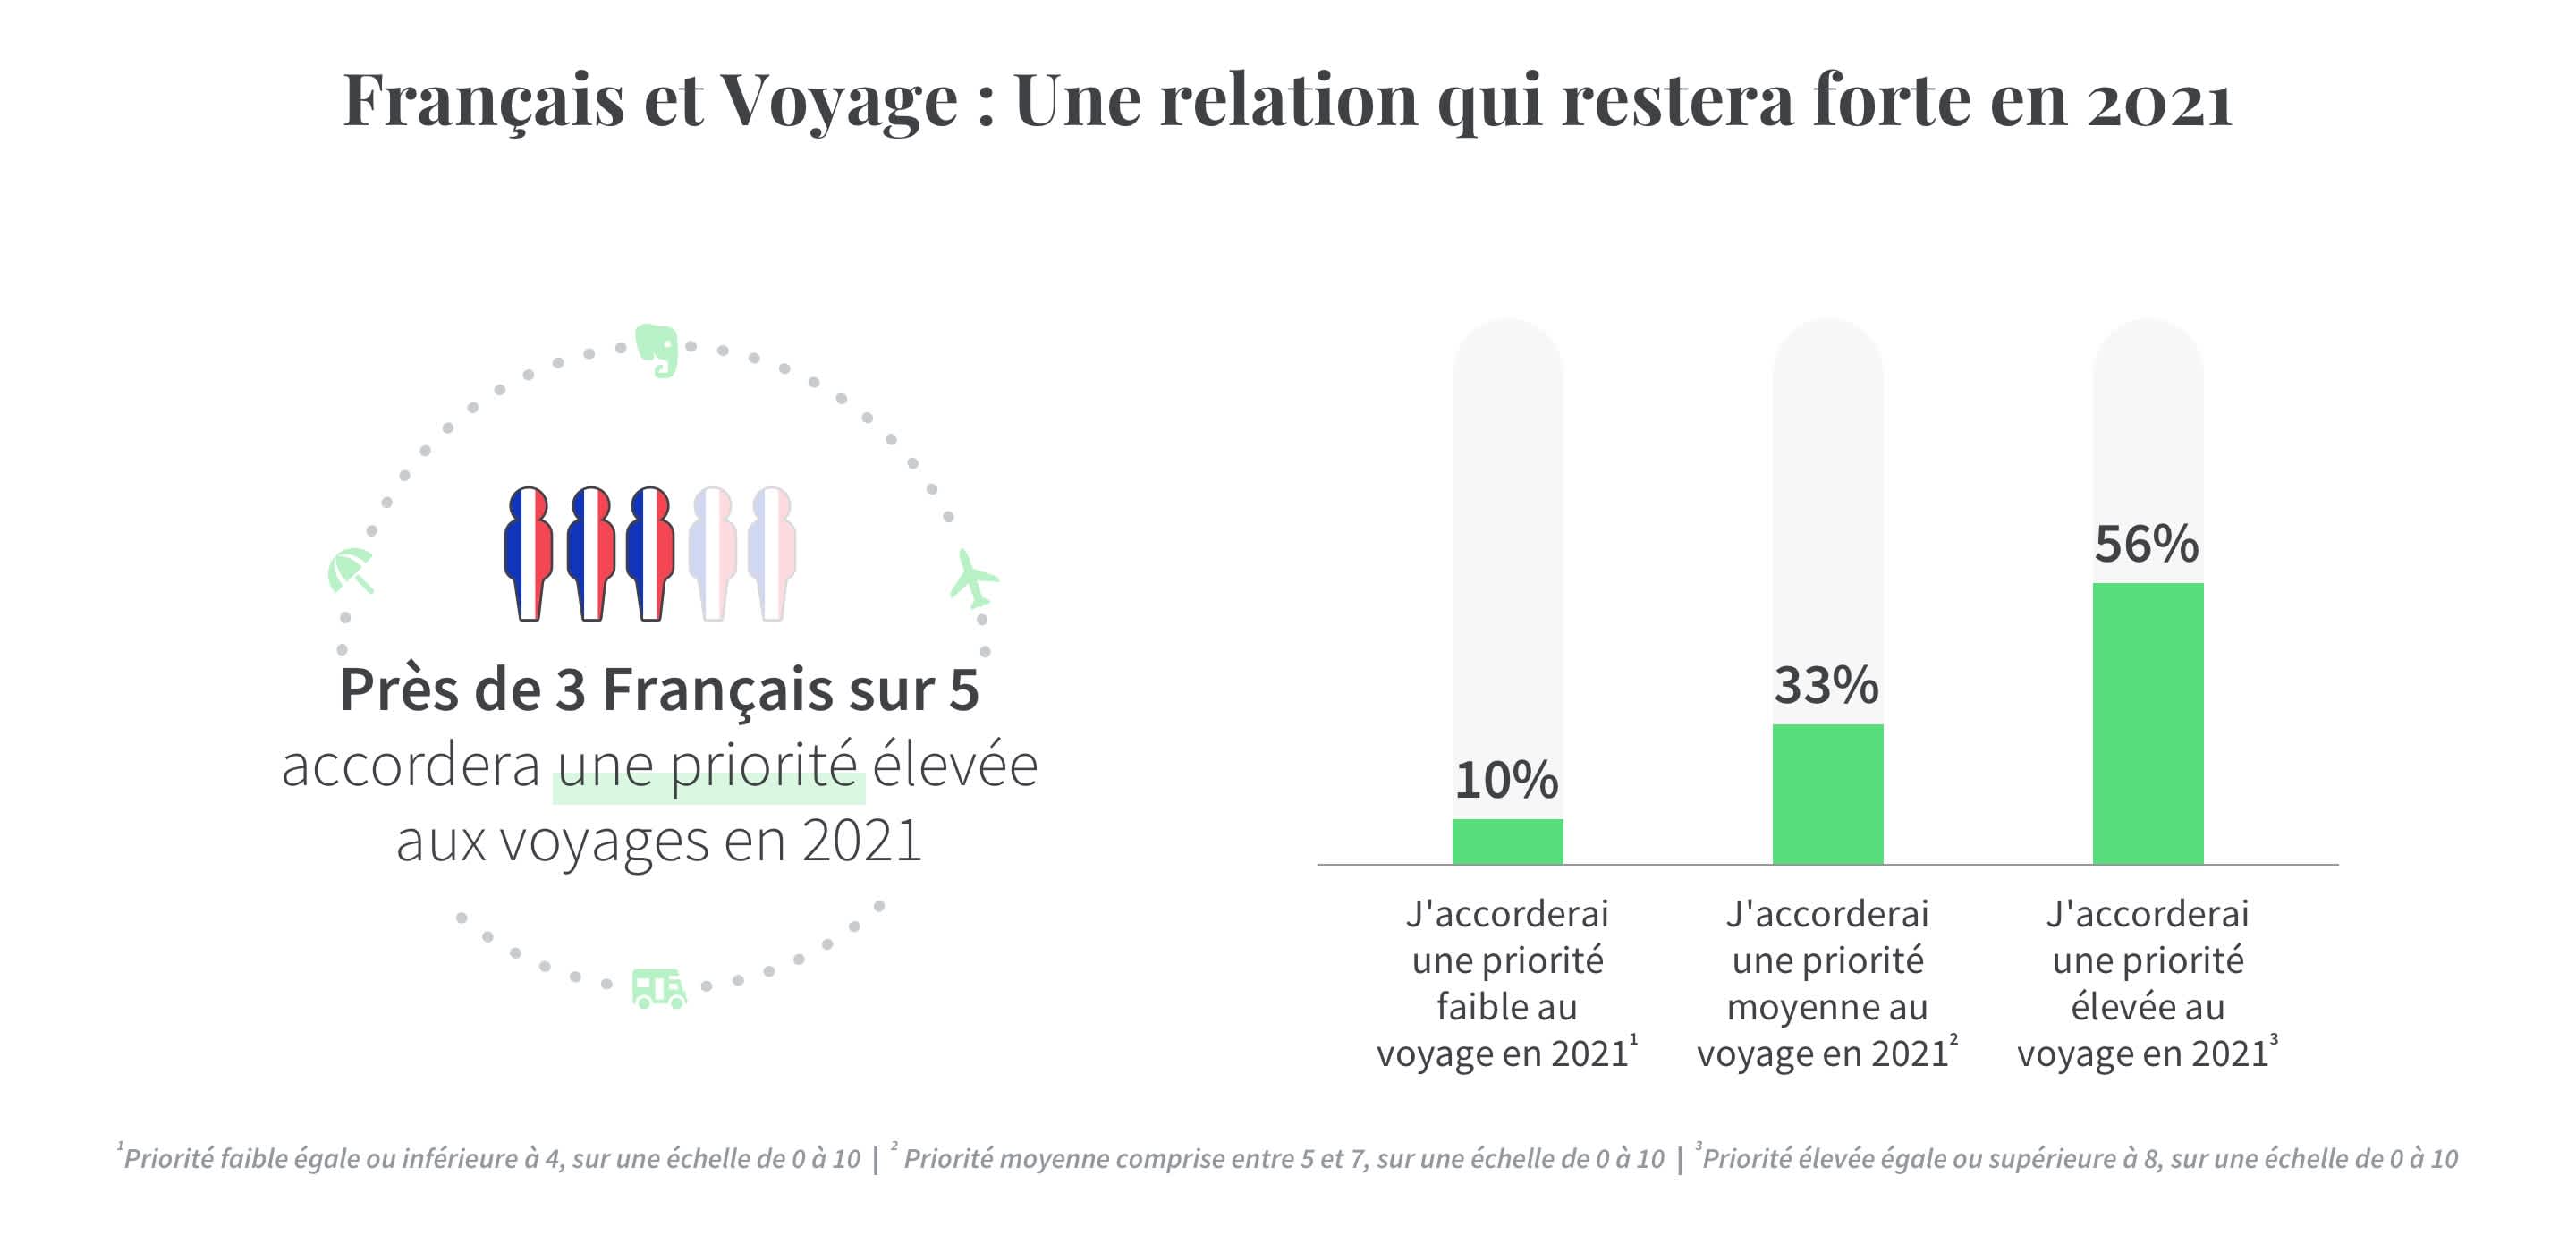 Infographie montrant que 56% des Français considèreront le voyage comme une priorité en 2021. Source : Sondage Tourlane sur les Tendances de voyages en 2021.